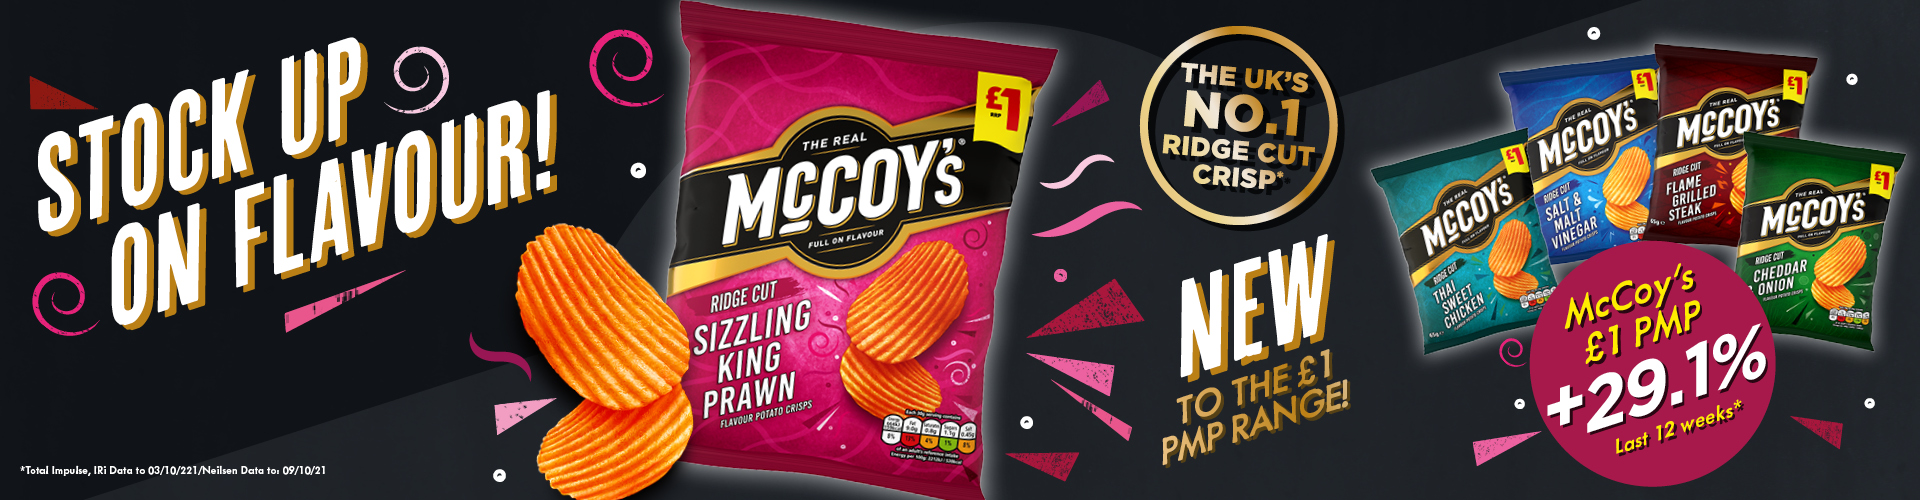 McCoys Sizzlin Prawn £1